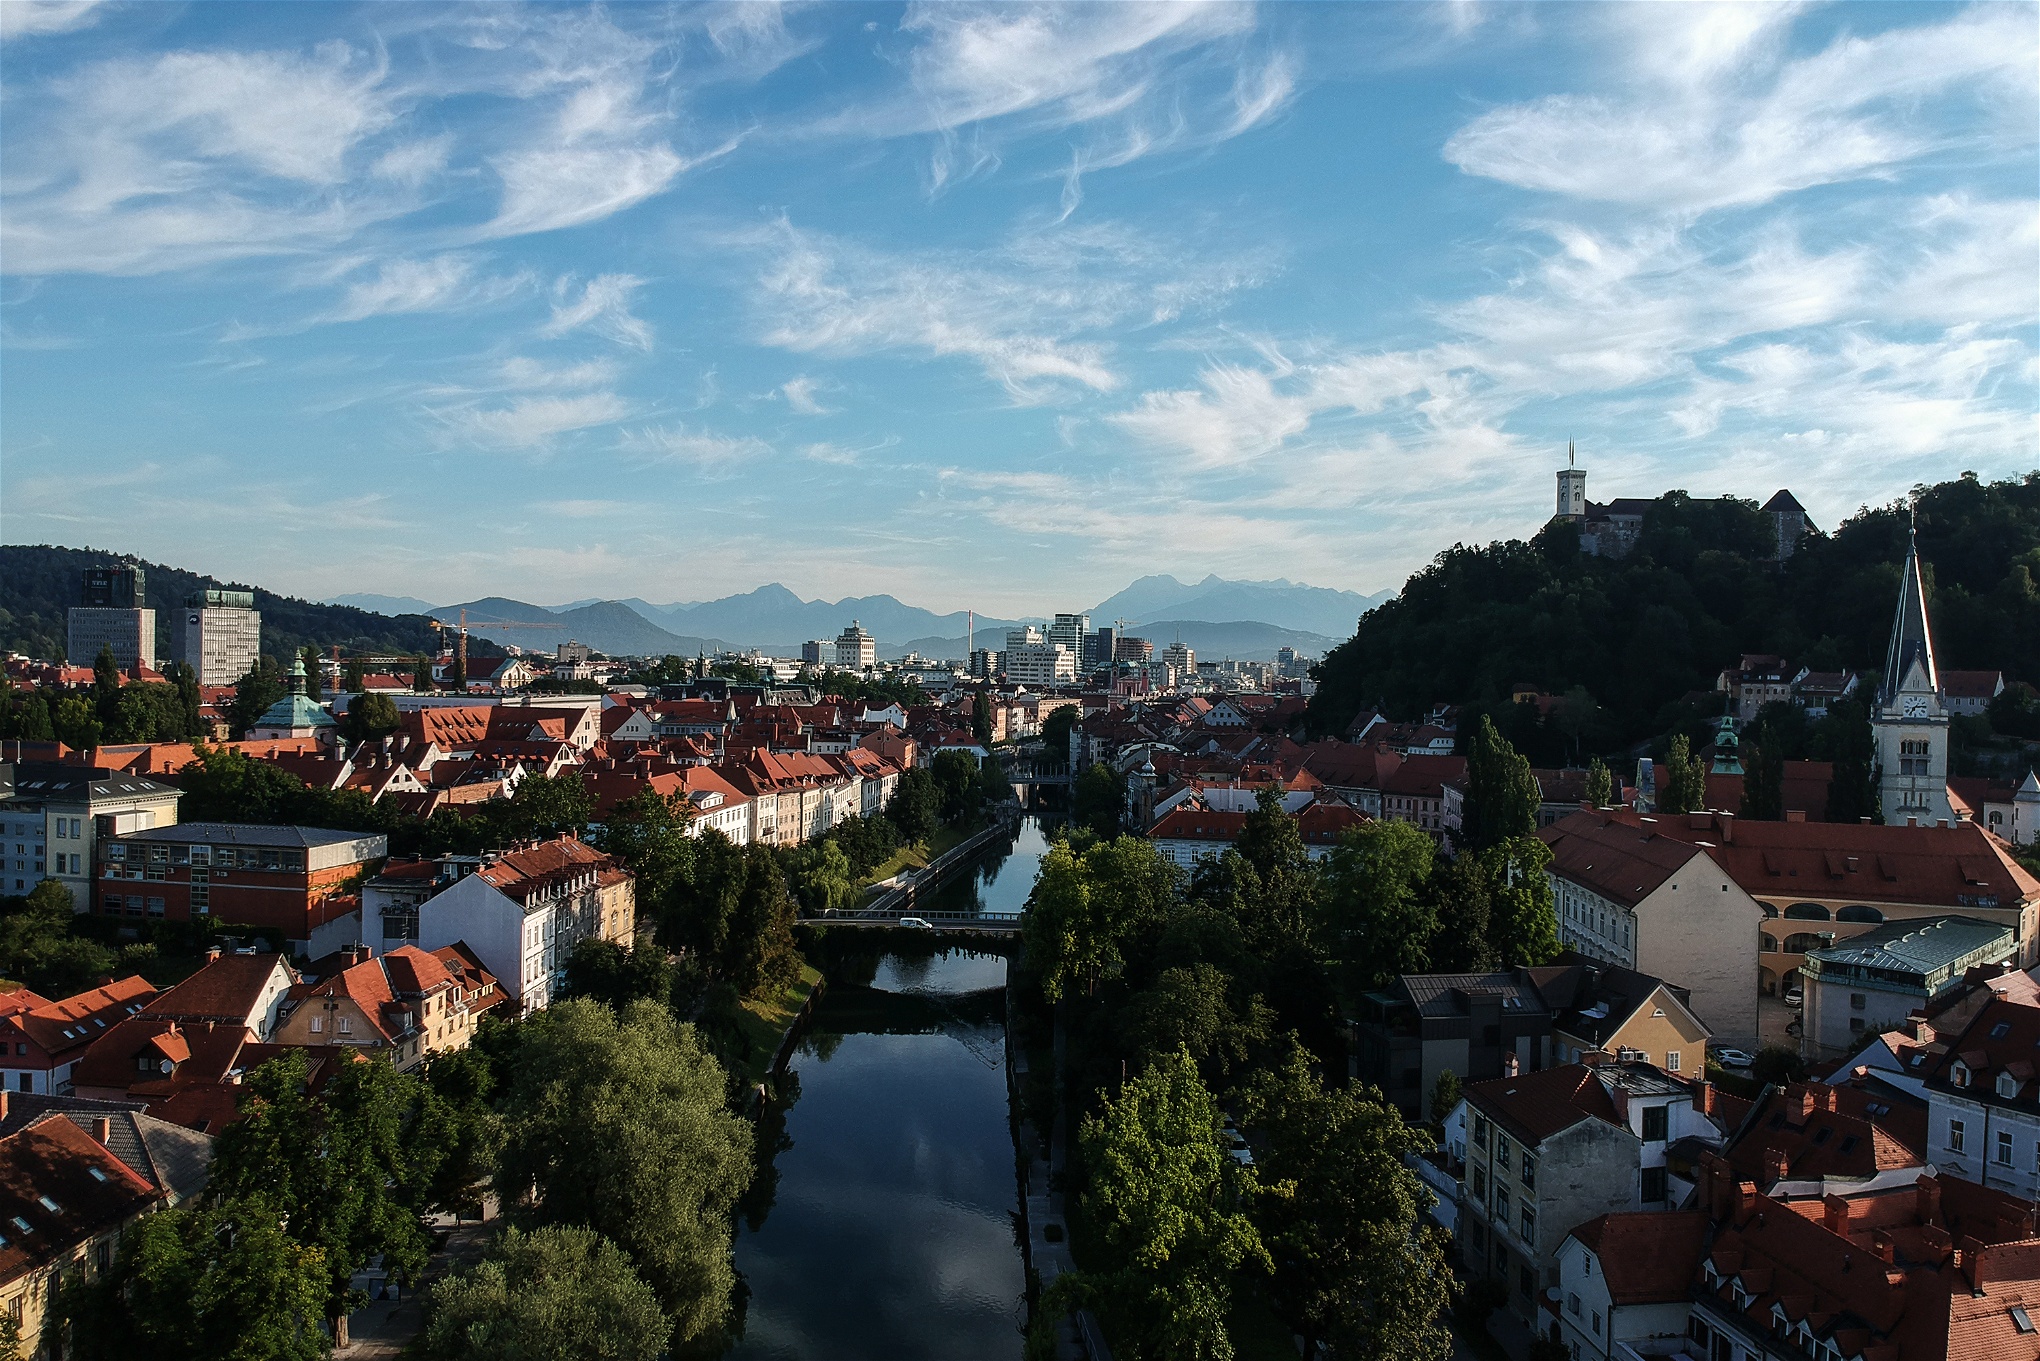 Foto: Valerio Nicolosi Ljubljana, Sloveniens huvudstad.